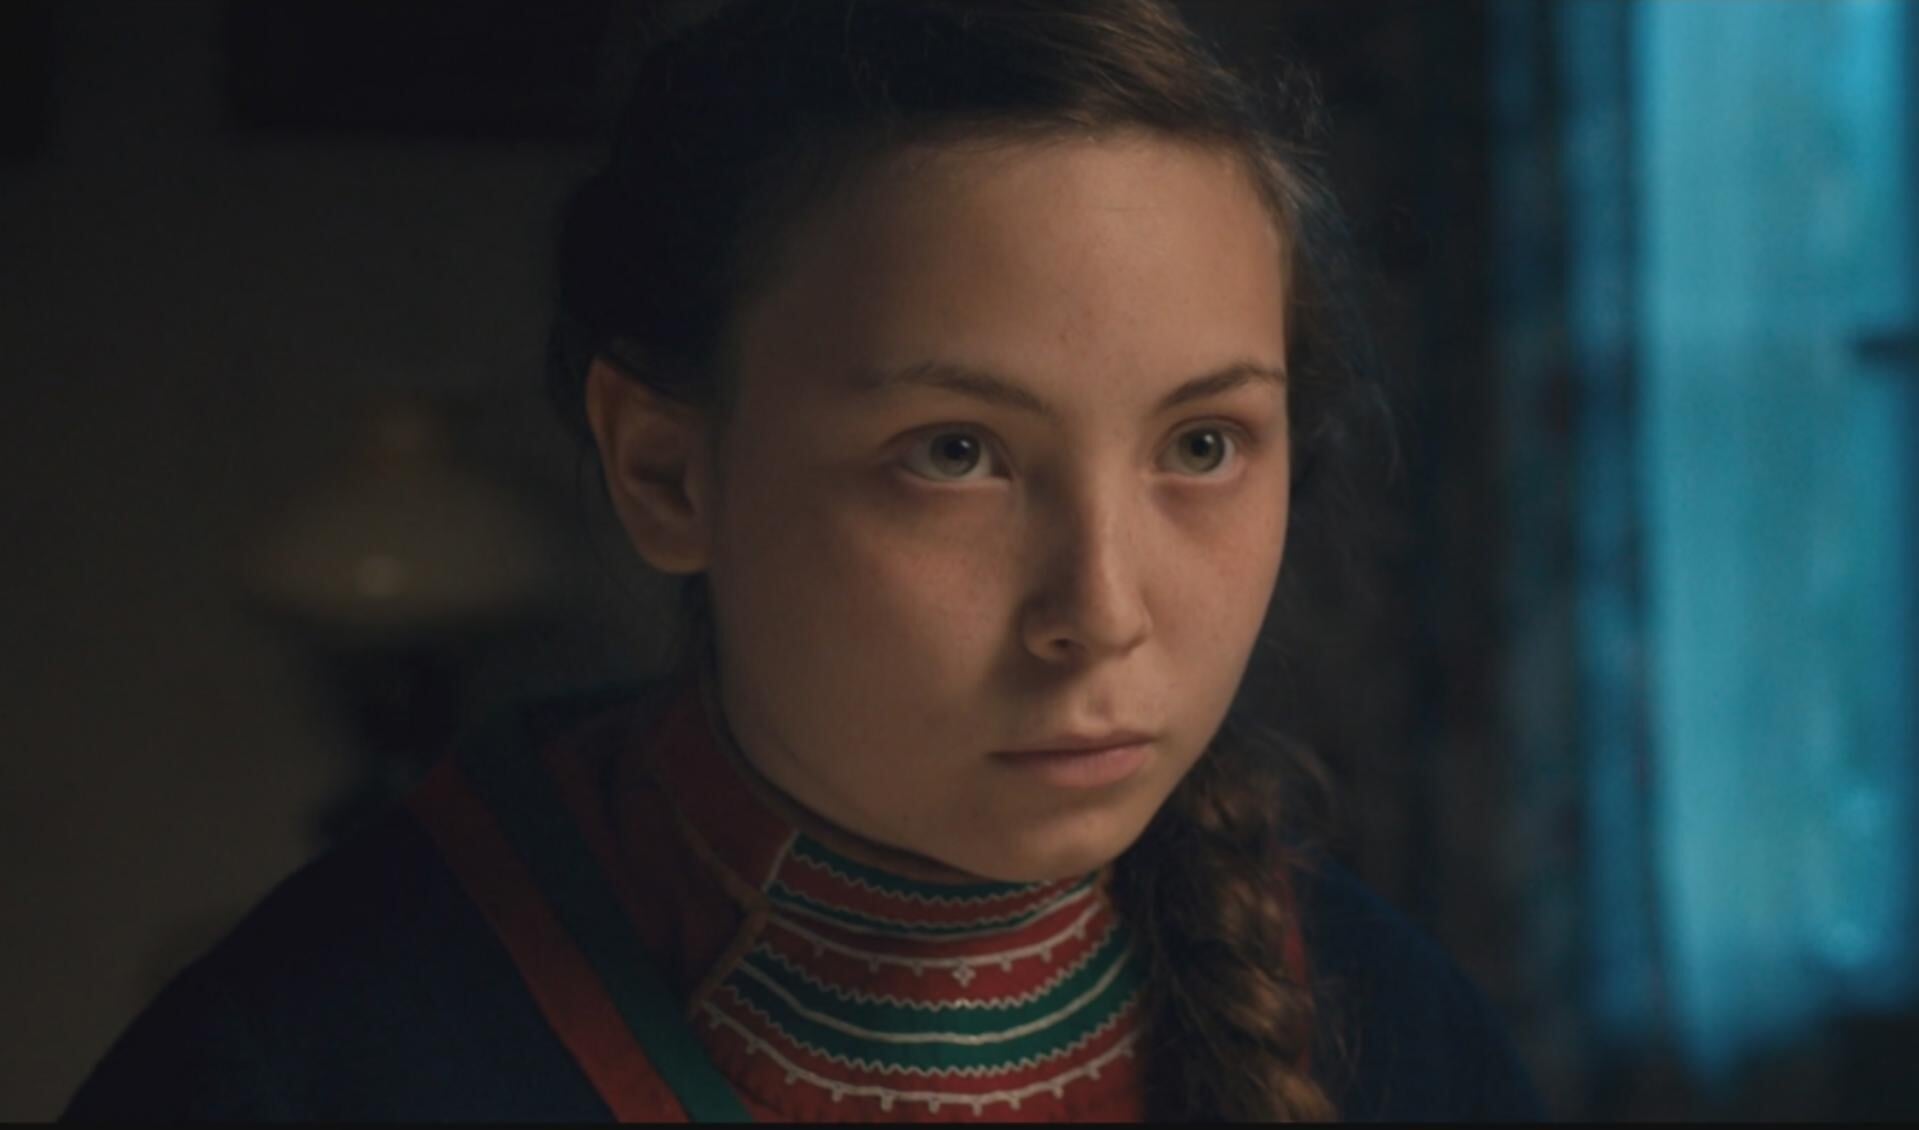 Het Sami-meisje dat in de tweede film aan bod komt.